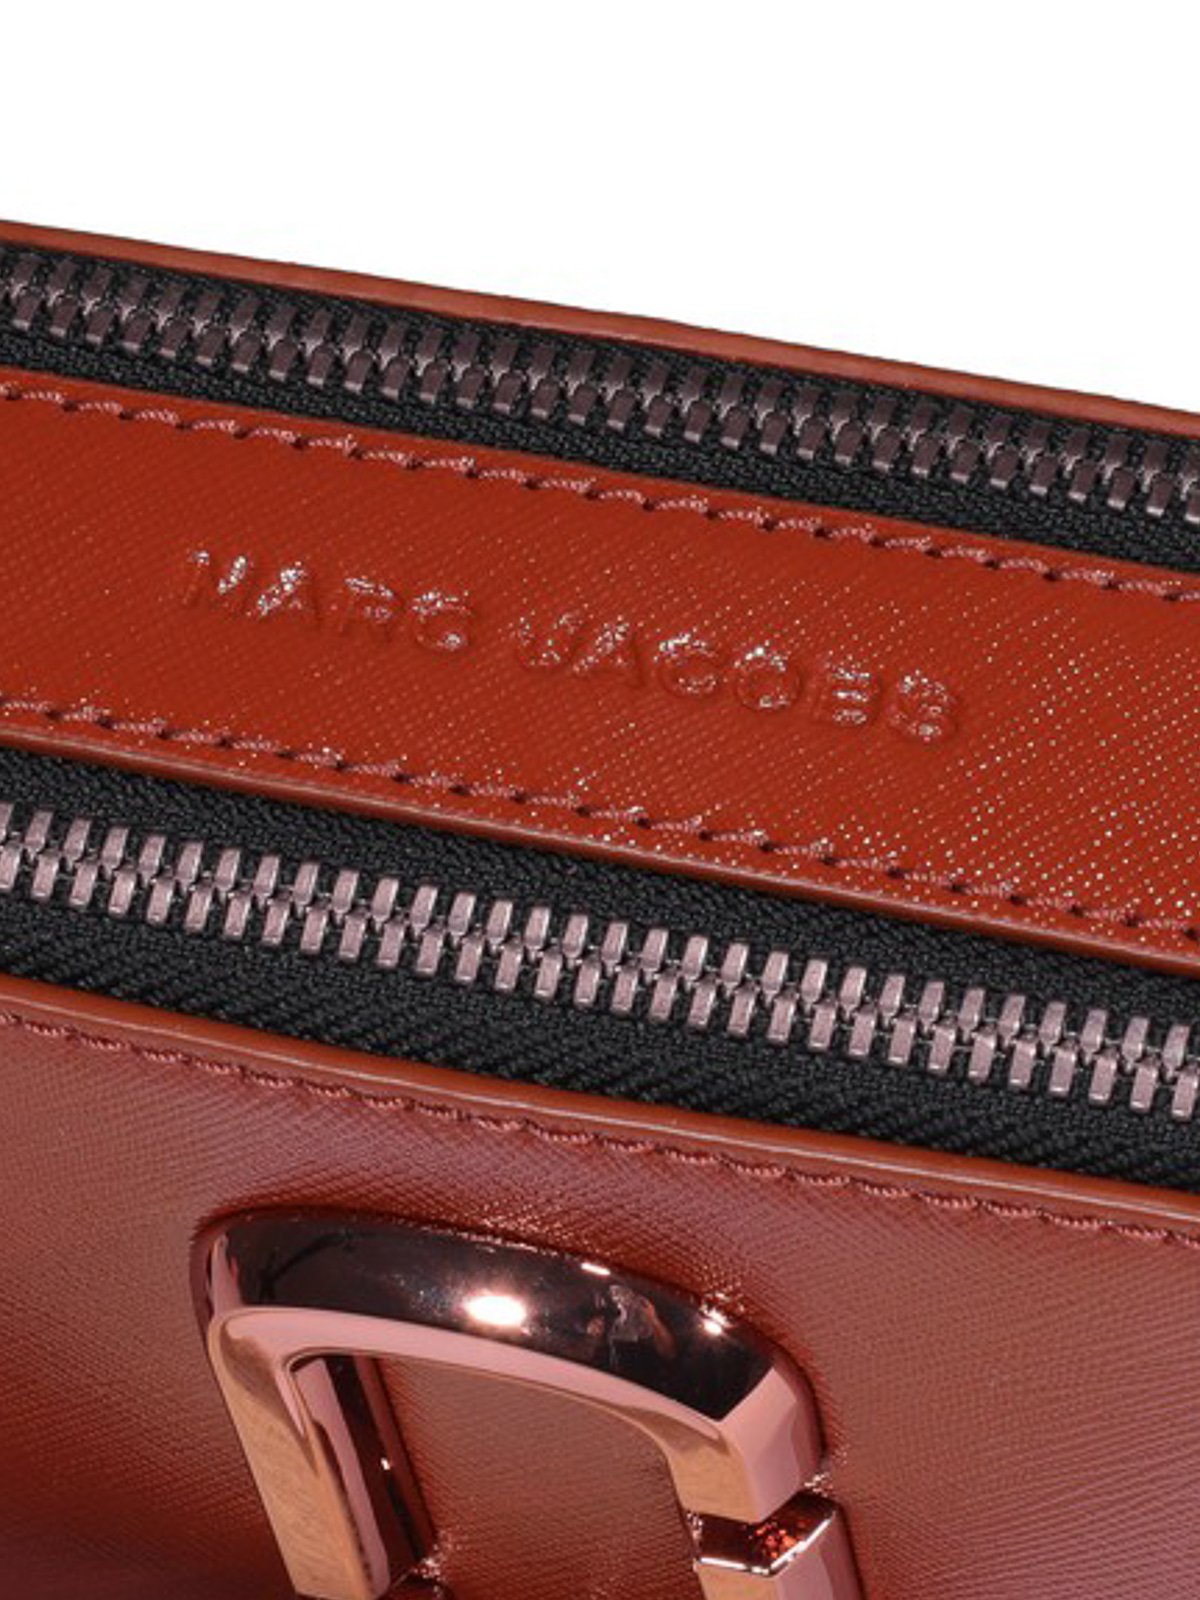 Túi đeo chéo nữ Marc Jacobs màu cam nâu The Snapshot Monochrome Leather Camera Bag 11